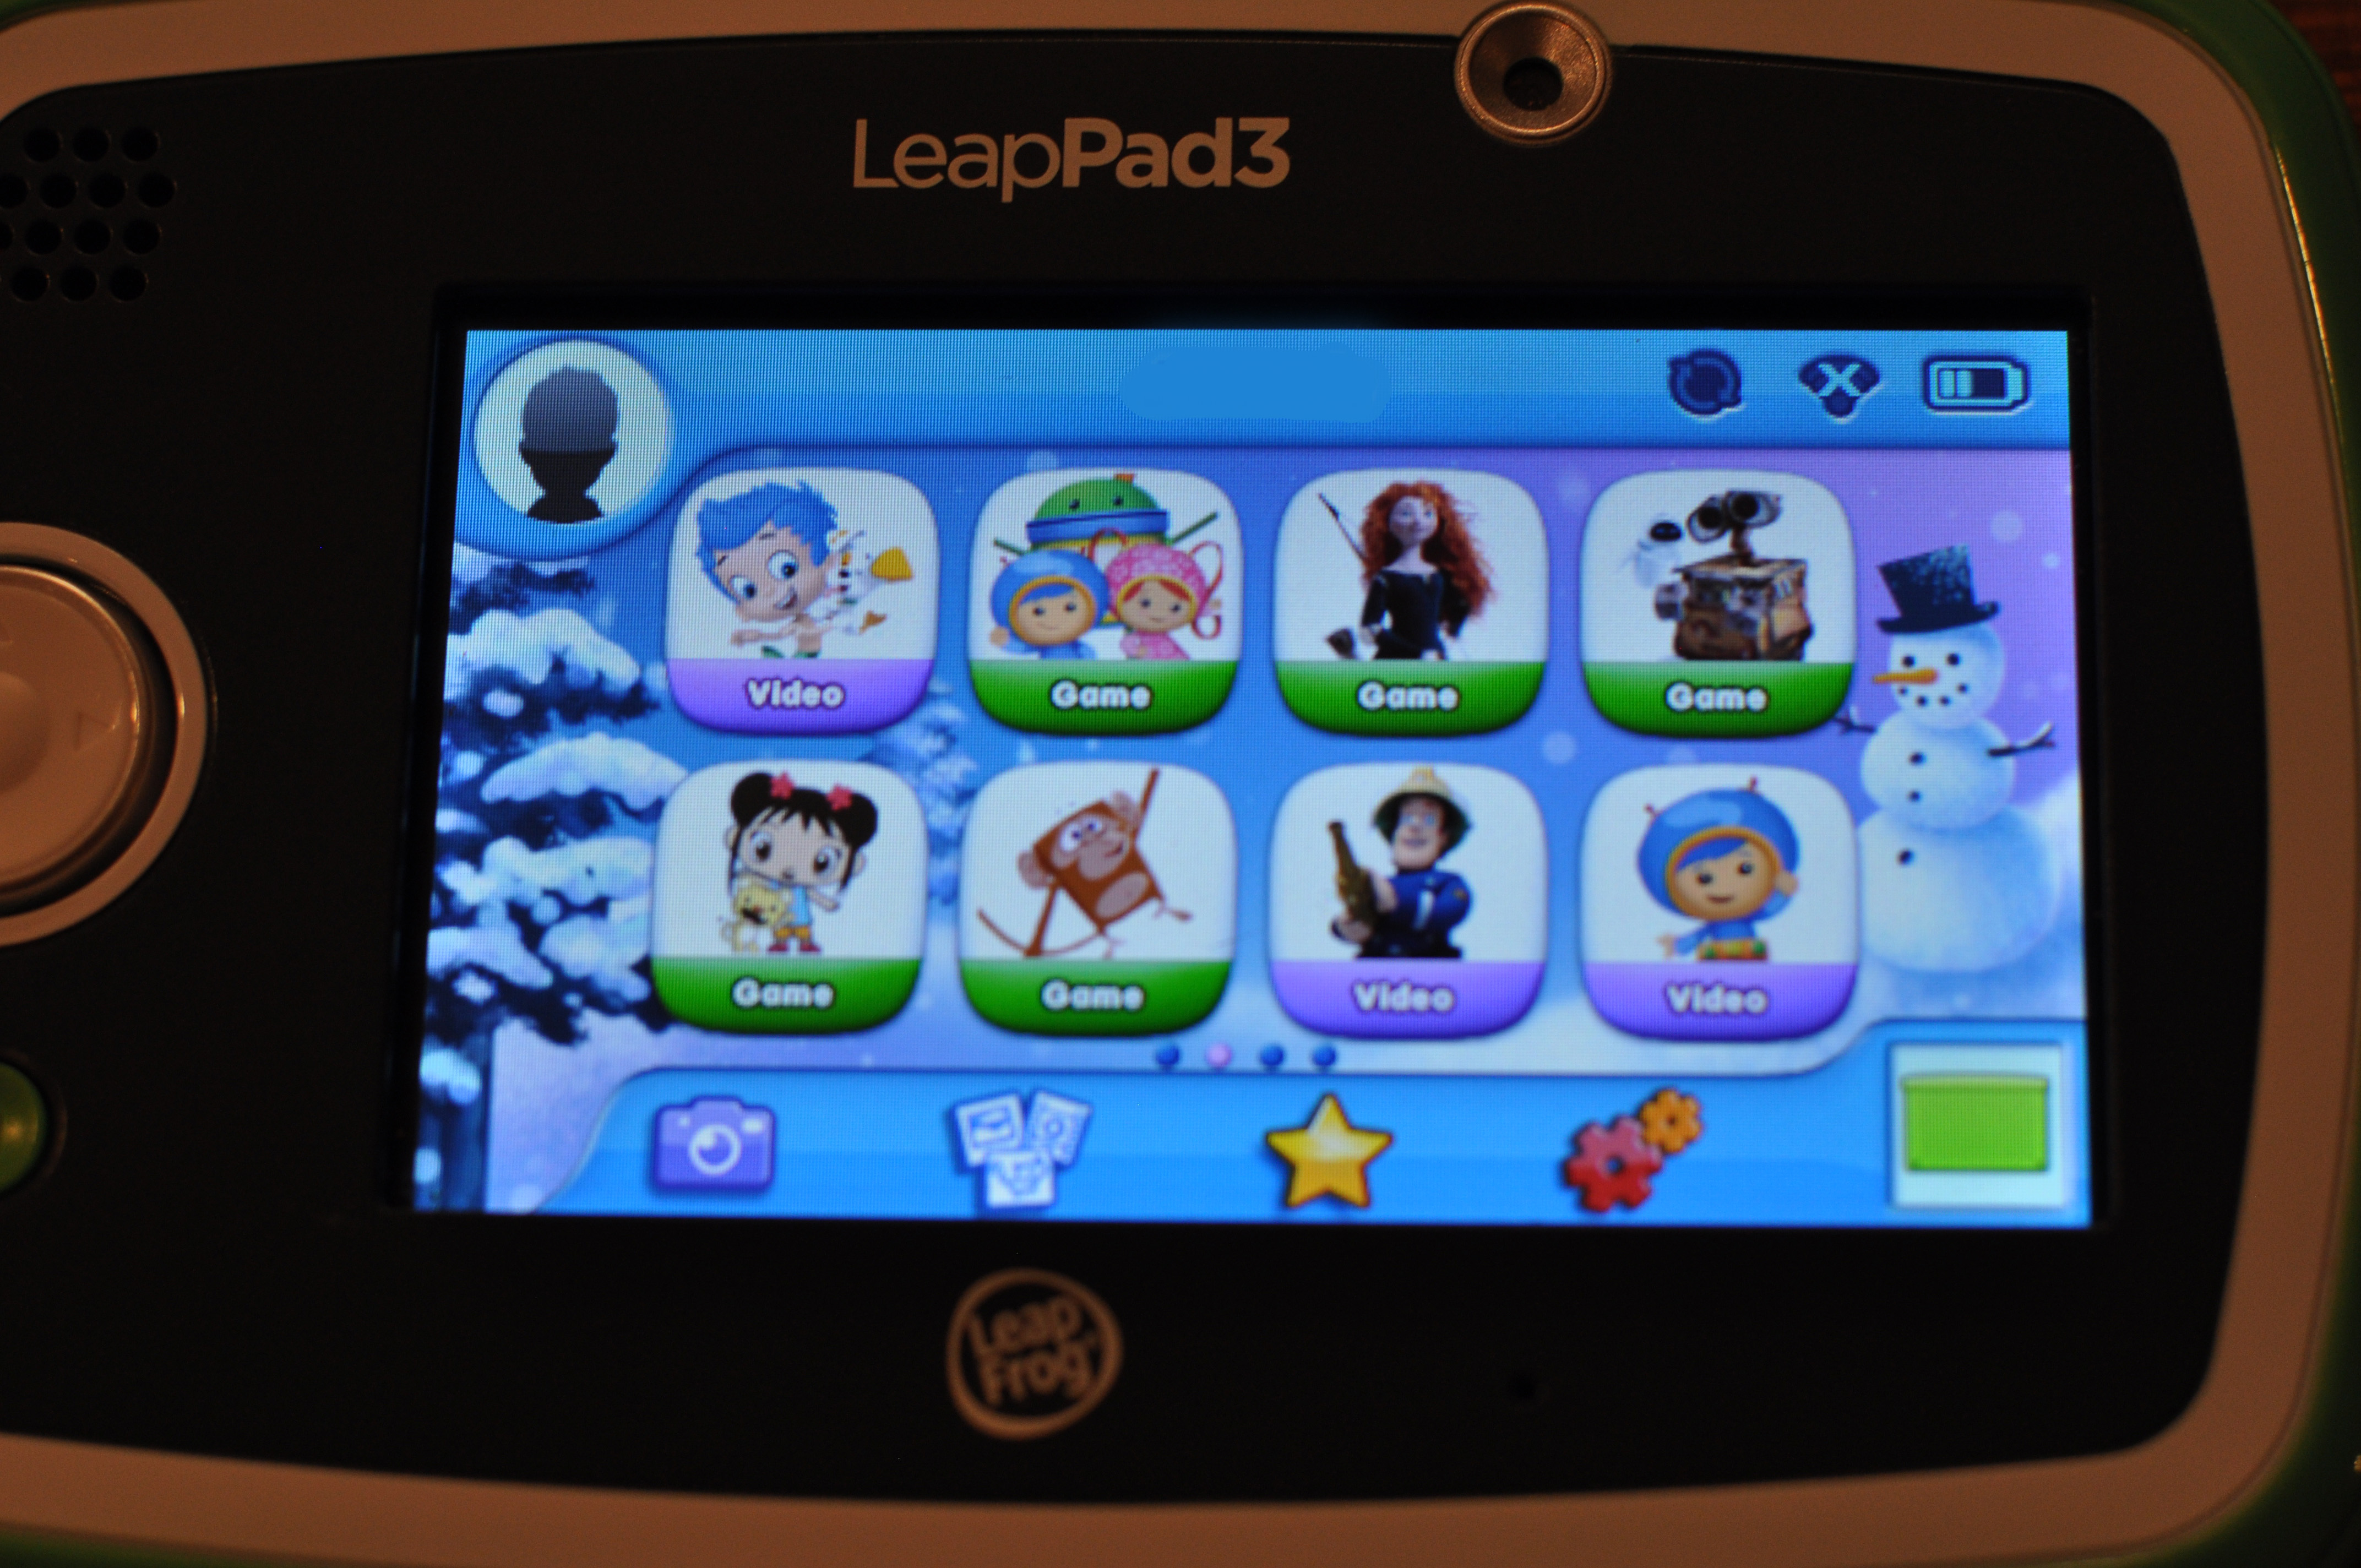 leapfrog leappad3 learning tablet